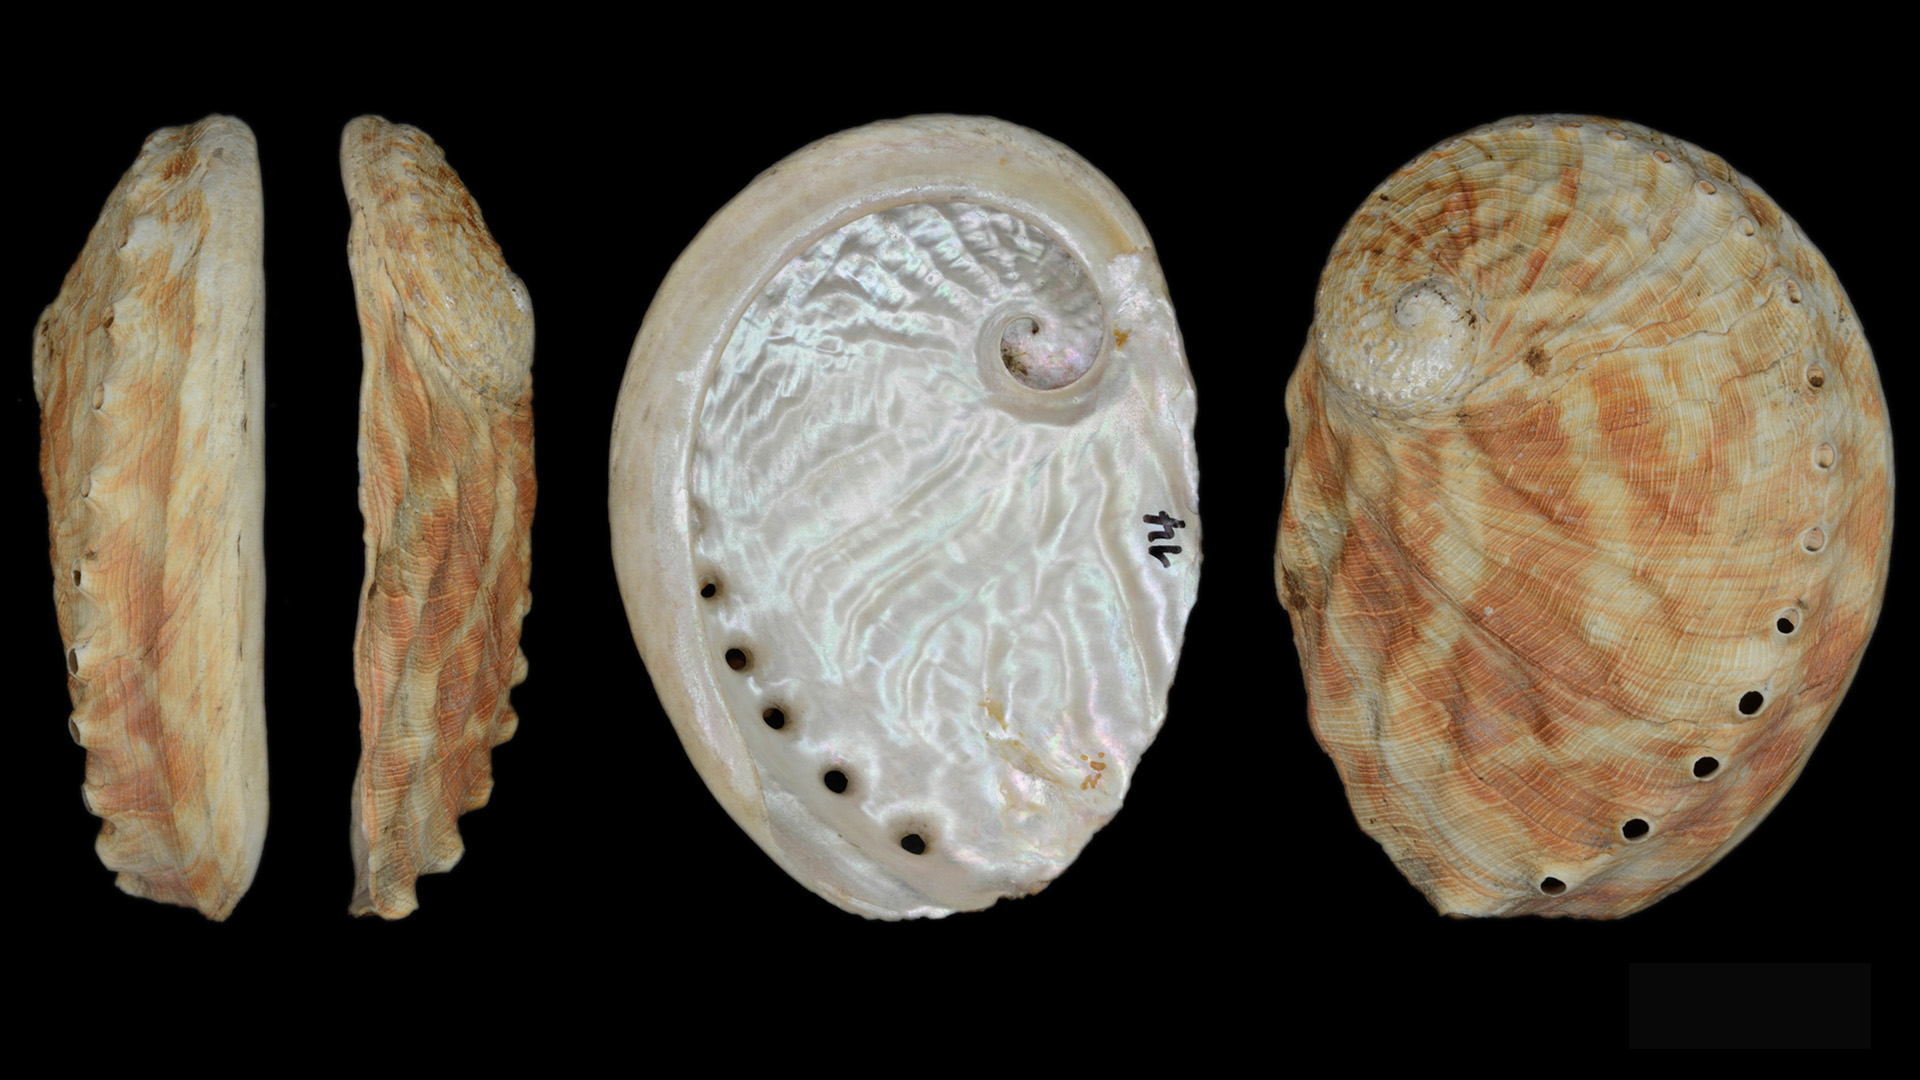 Abbildung der Muschel "Das Riesenohr von Neuholland". Zu sehen ist die Muschel einmal seitlich, einmal von oben und einmal von unten.